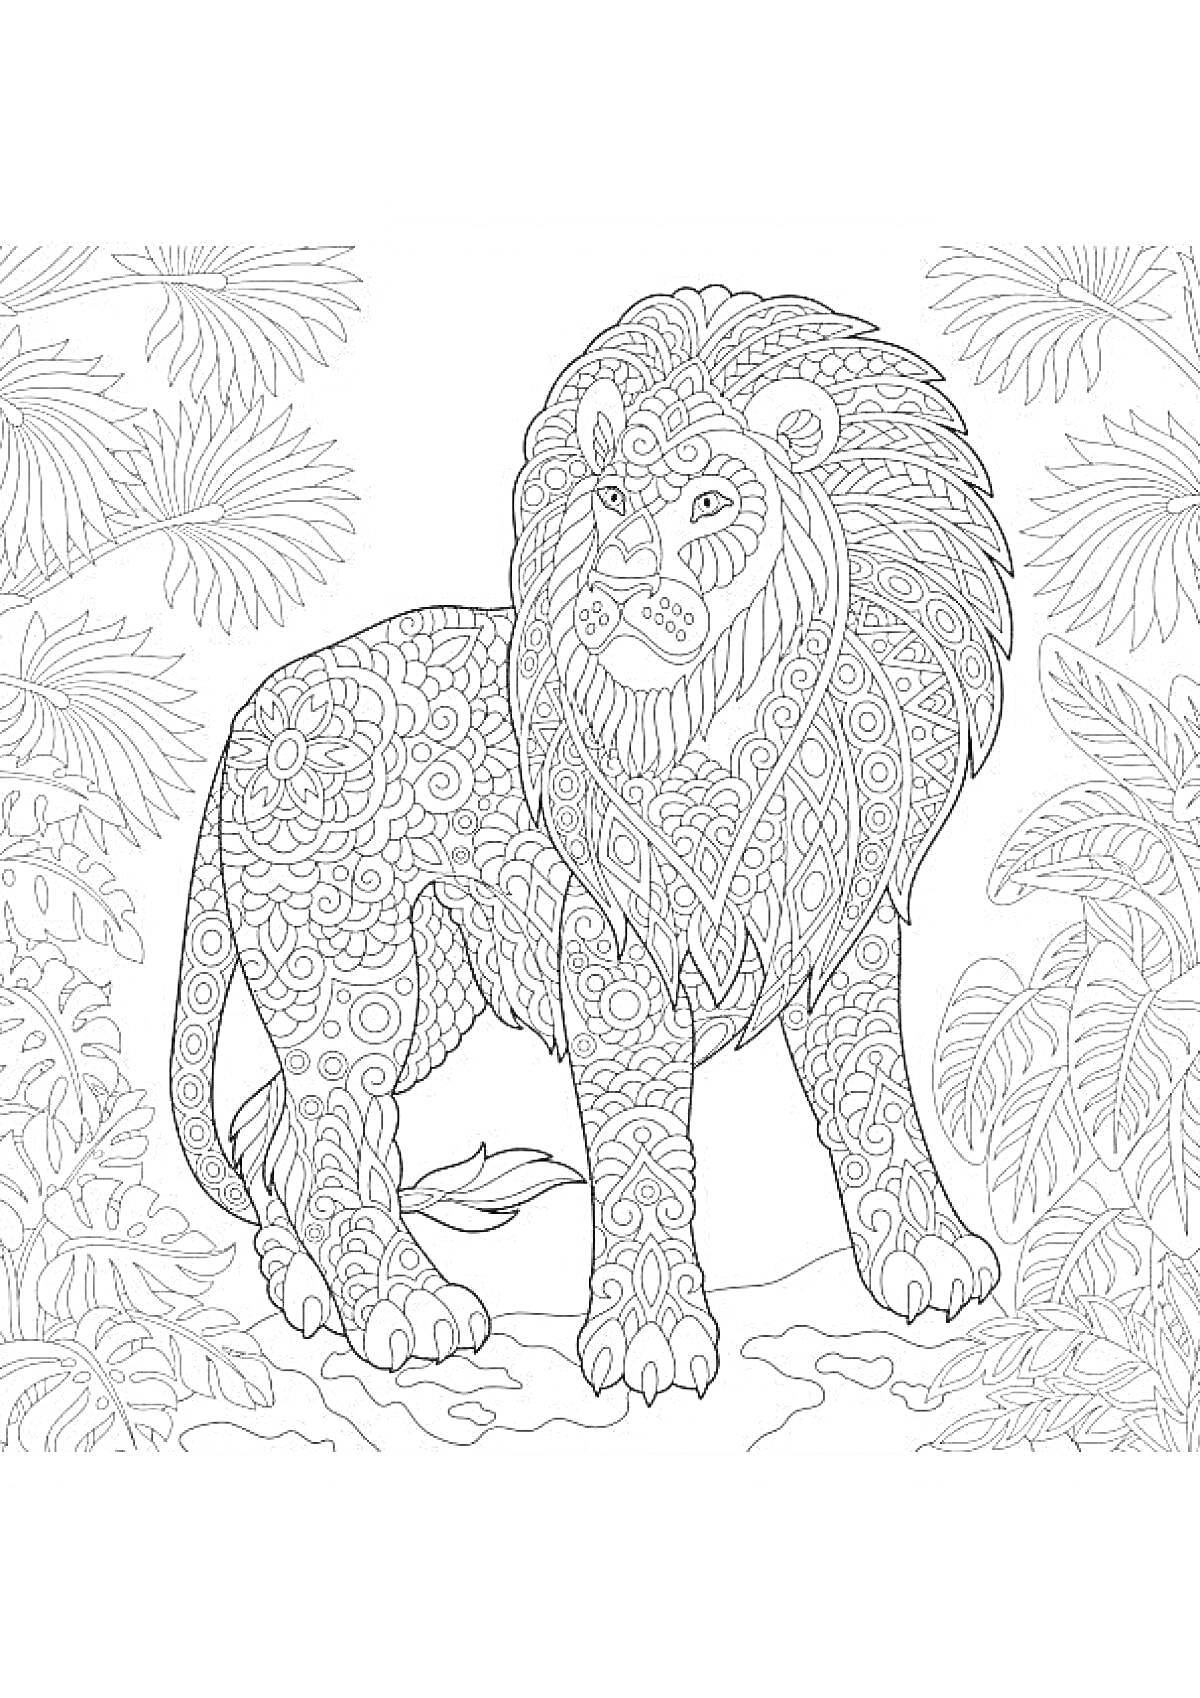 Раскраска Лев среди тропических растений с детализированными узорами